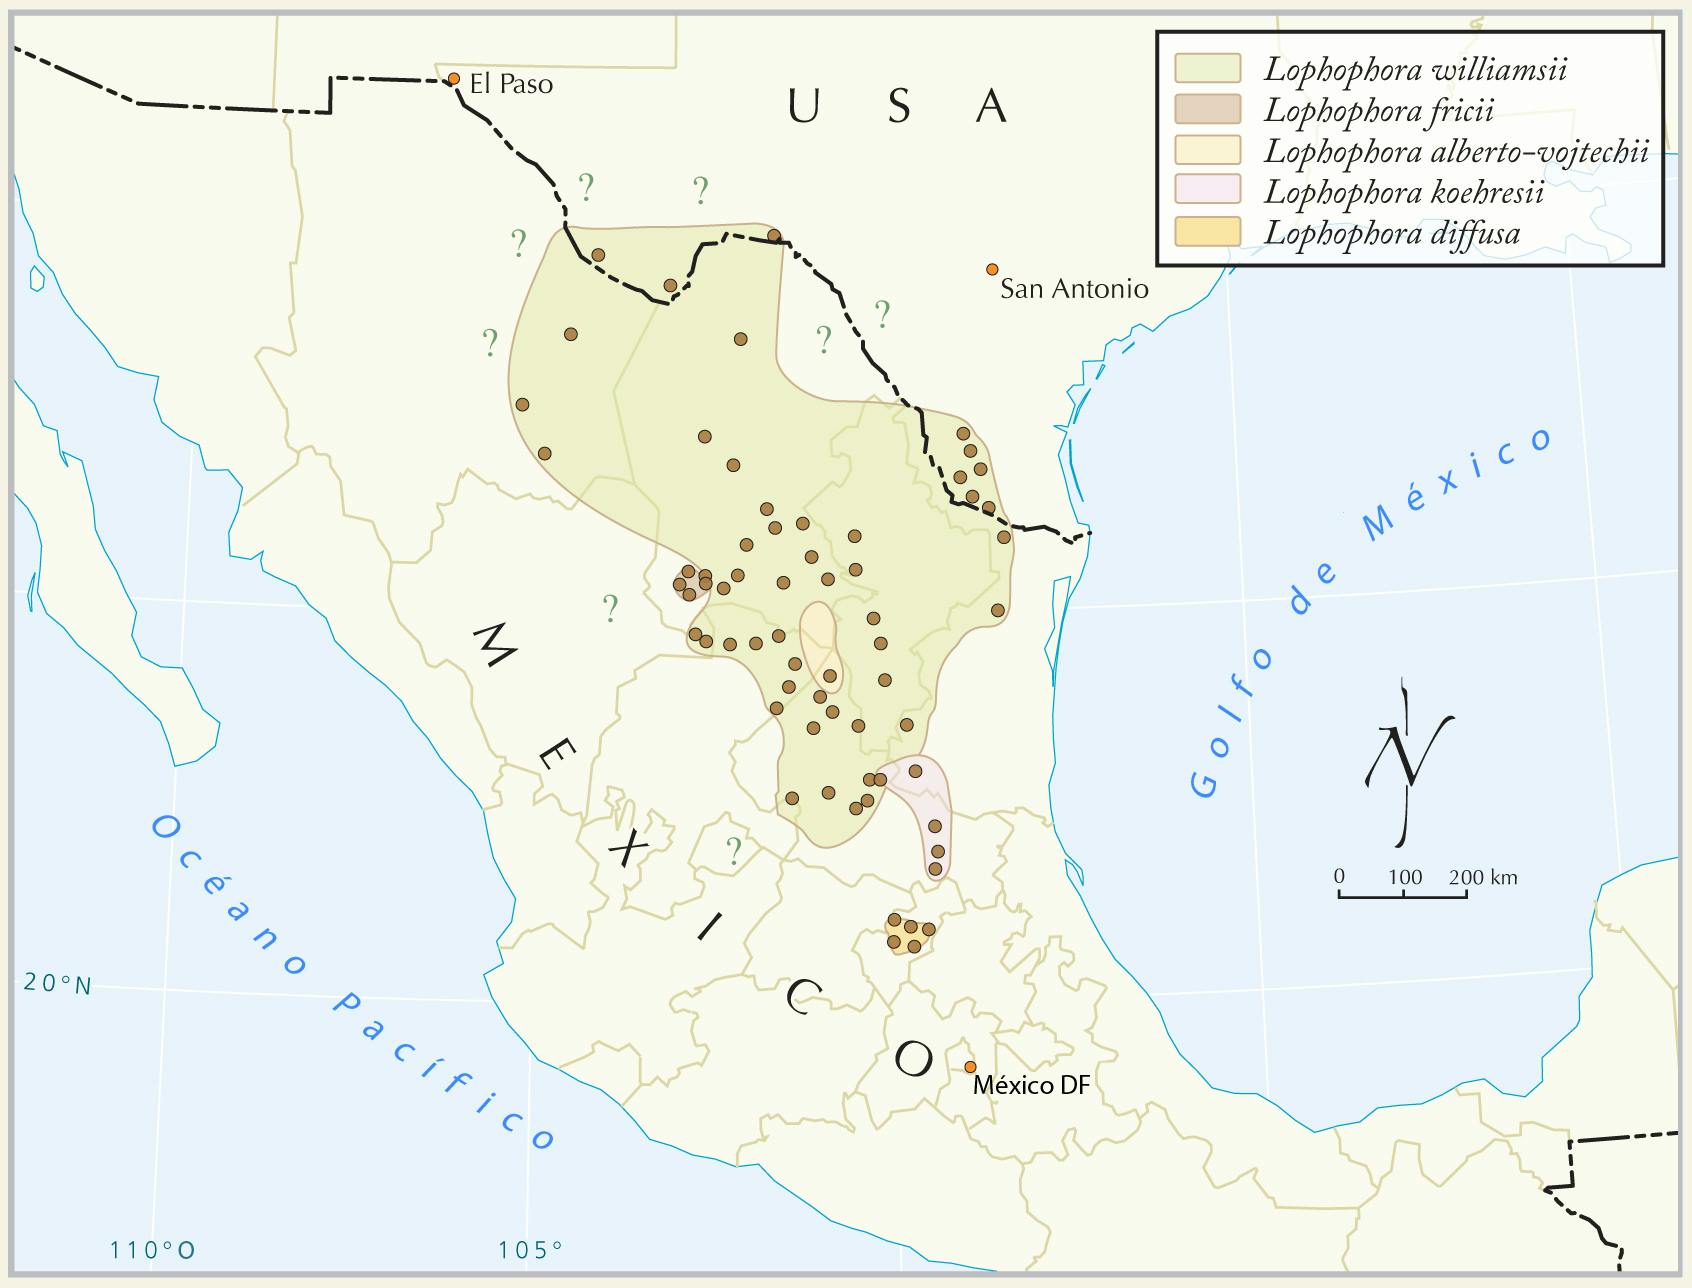 Mapa de la República Mexicana que muestra donde se encuentra el peyote.